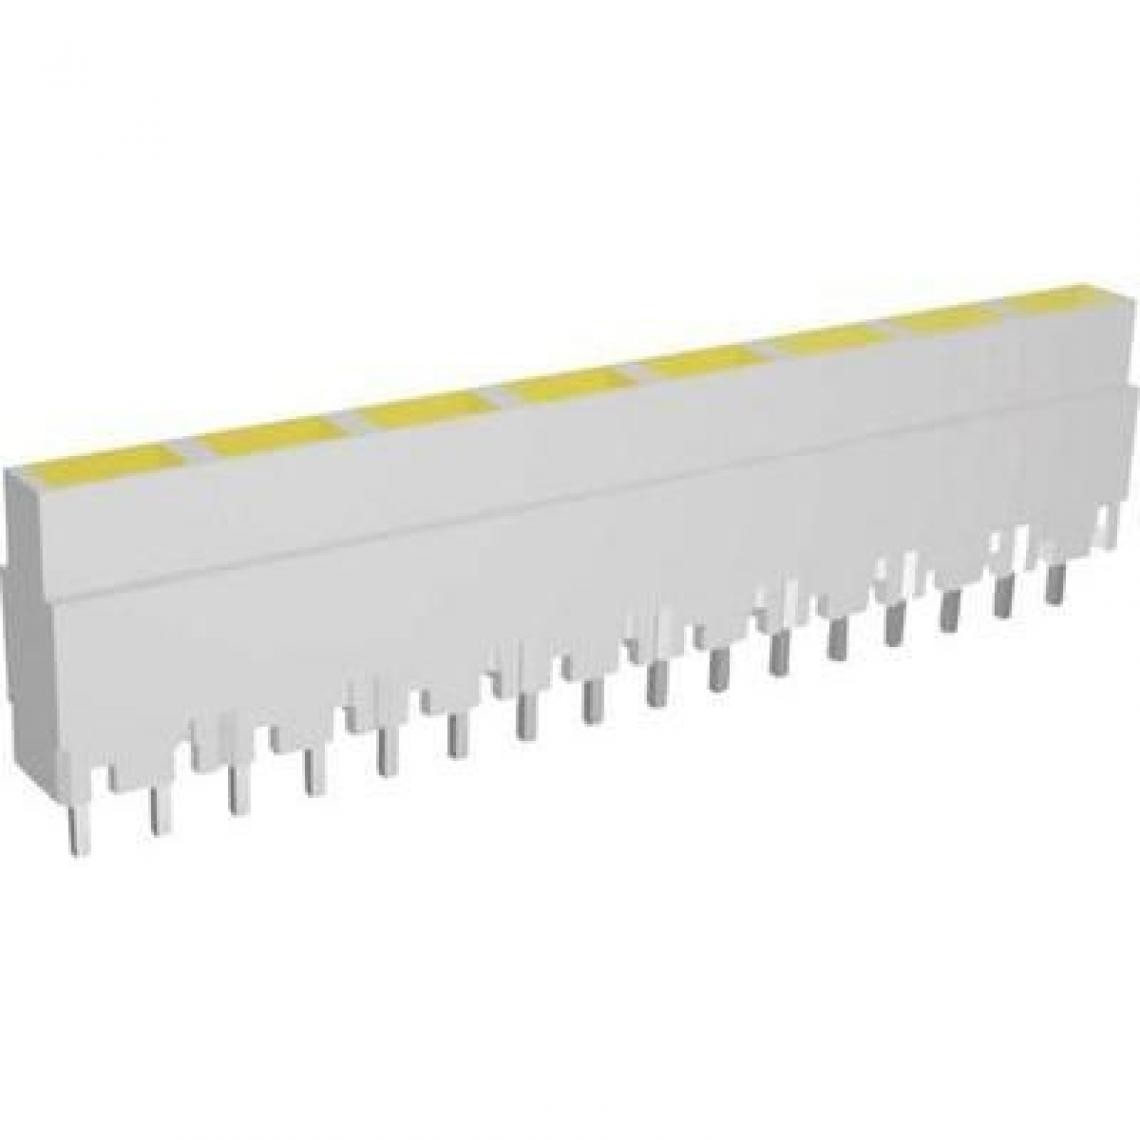 Inconnu - Rangée de LEDs Signal Construct ZALW 081 8 prises jaune (L x l x h) 40.8 x 3.7 x 9 mm 1 pc(s) - Fiches électriques